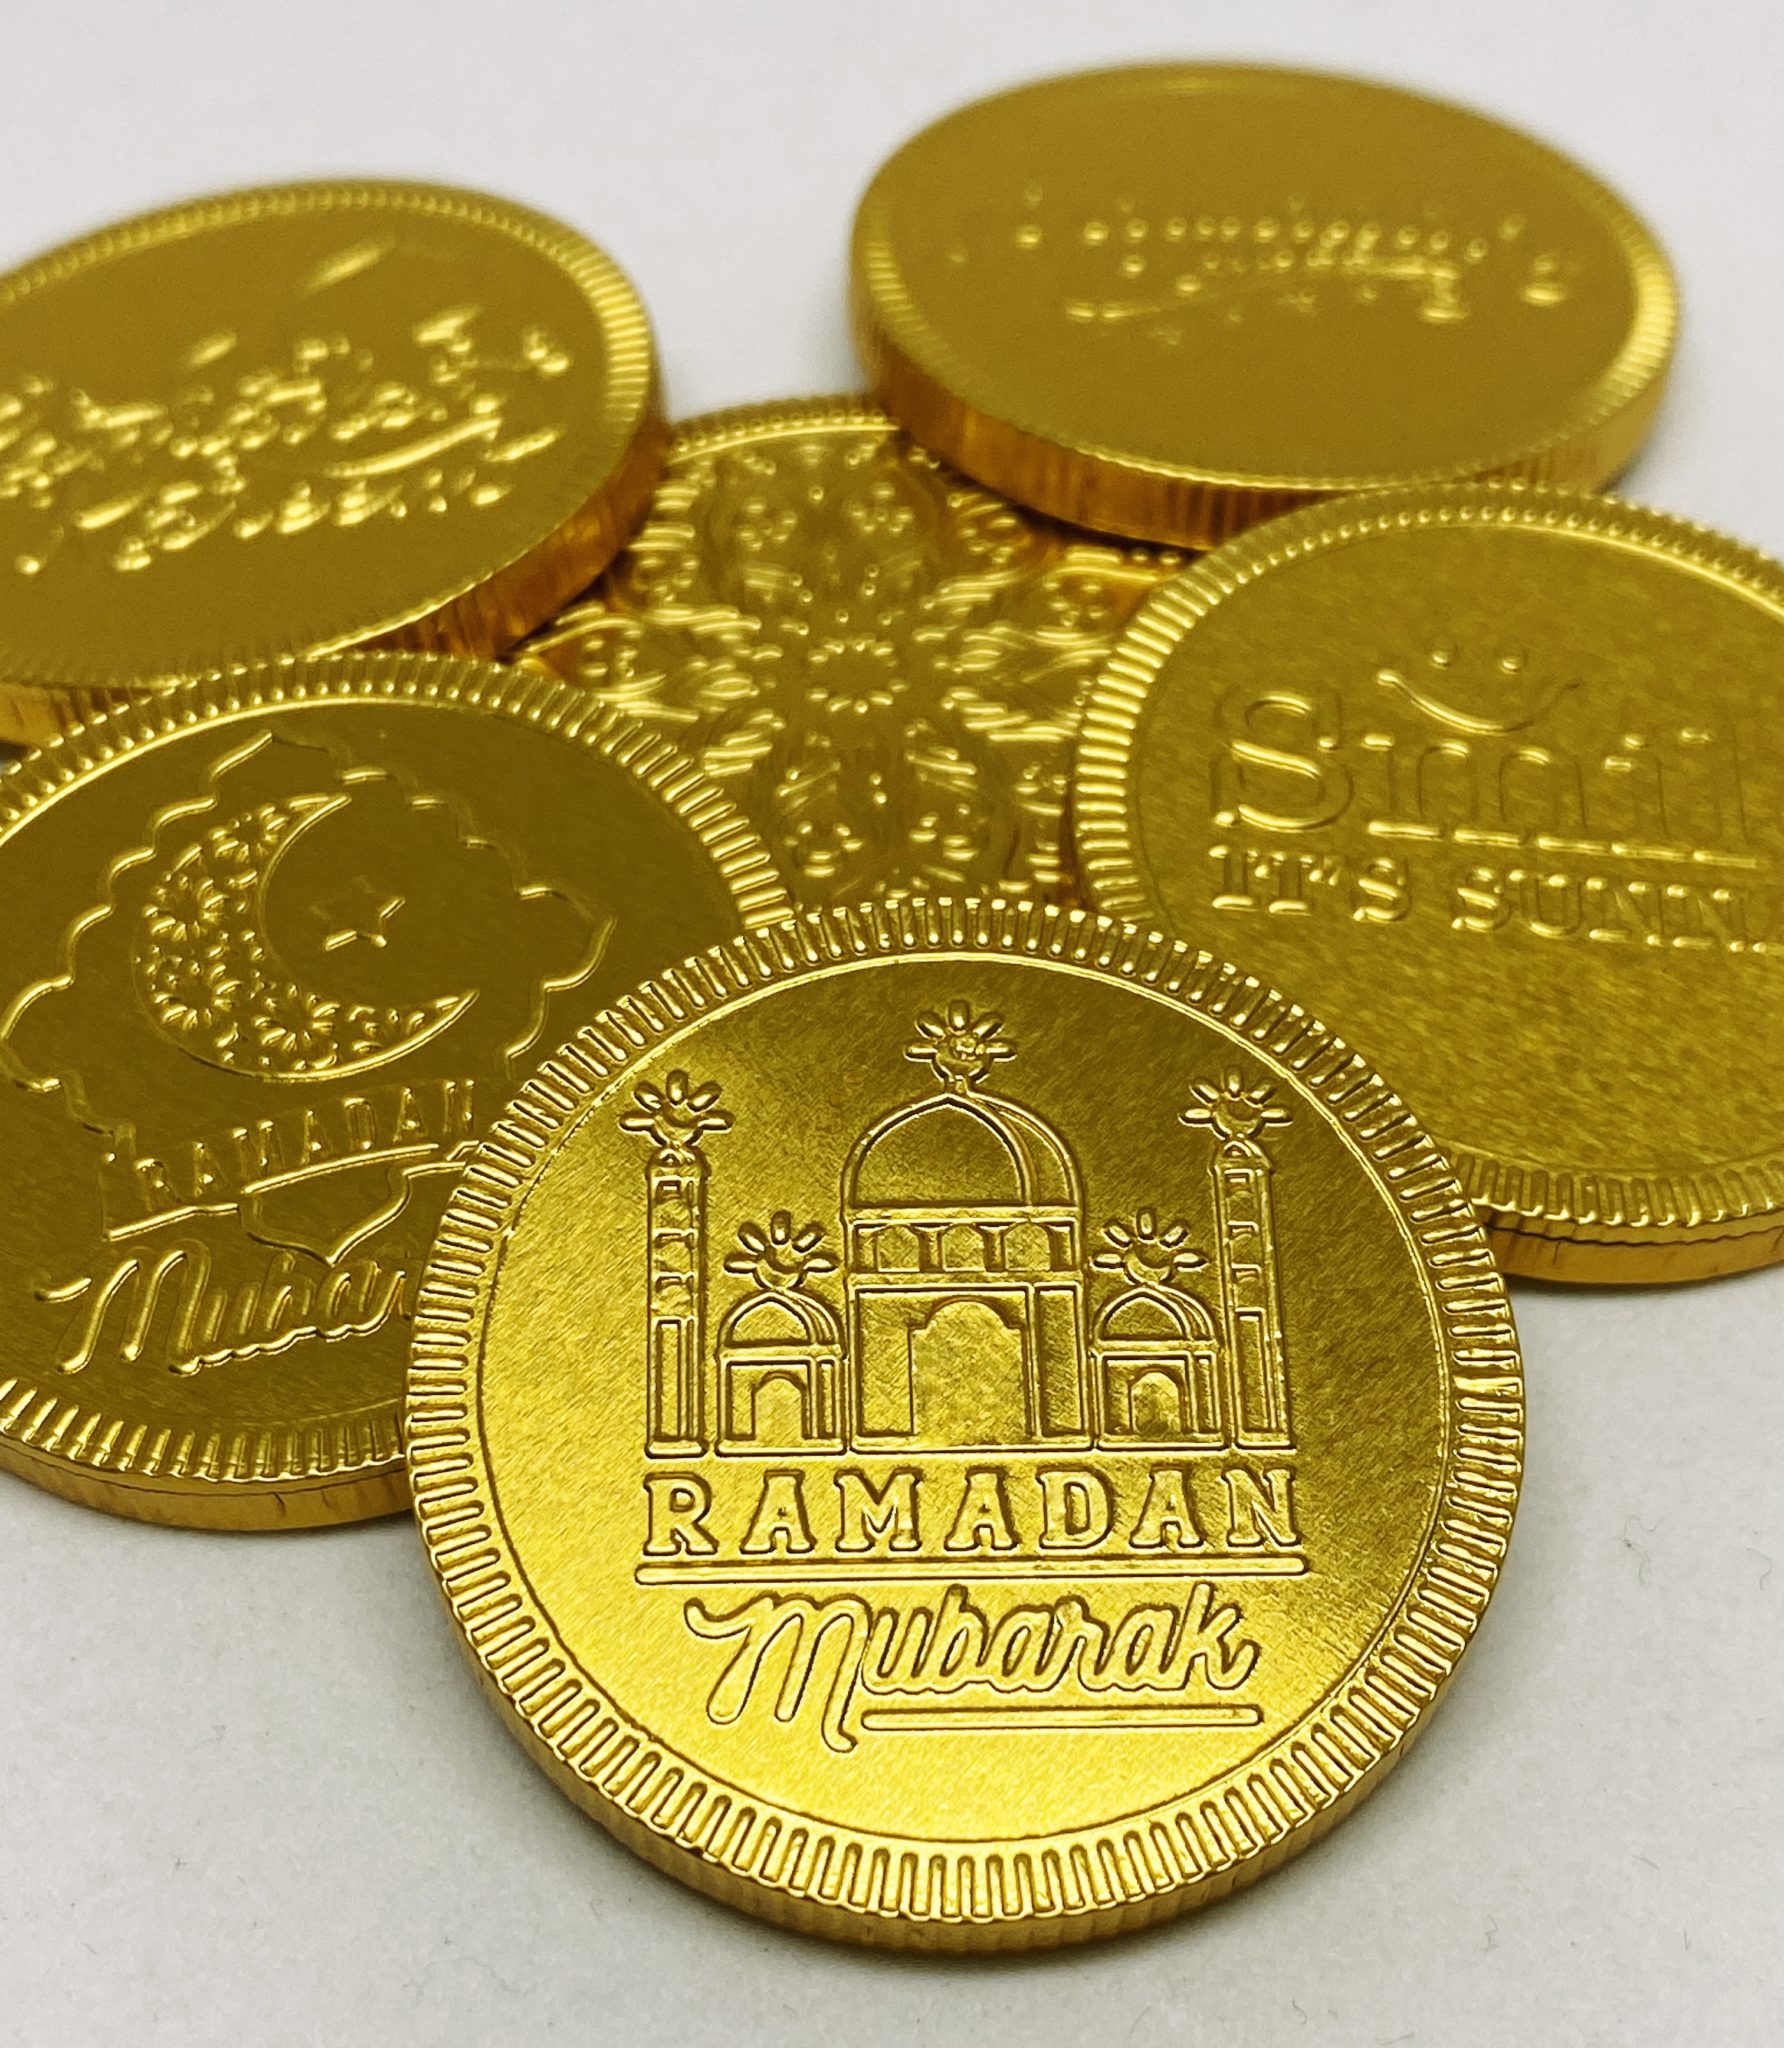 Ramadan Chocolate Coins Foiled Again! Chocolate Coins